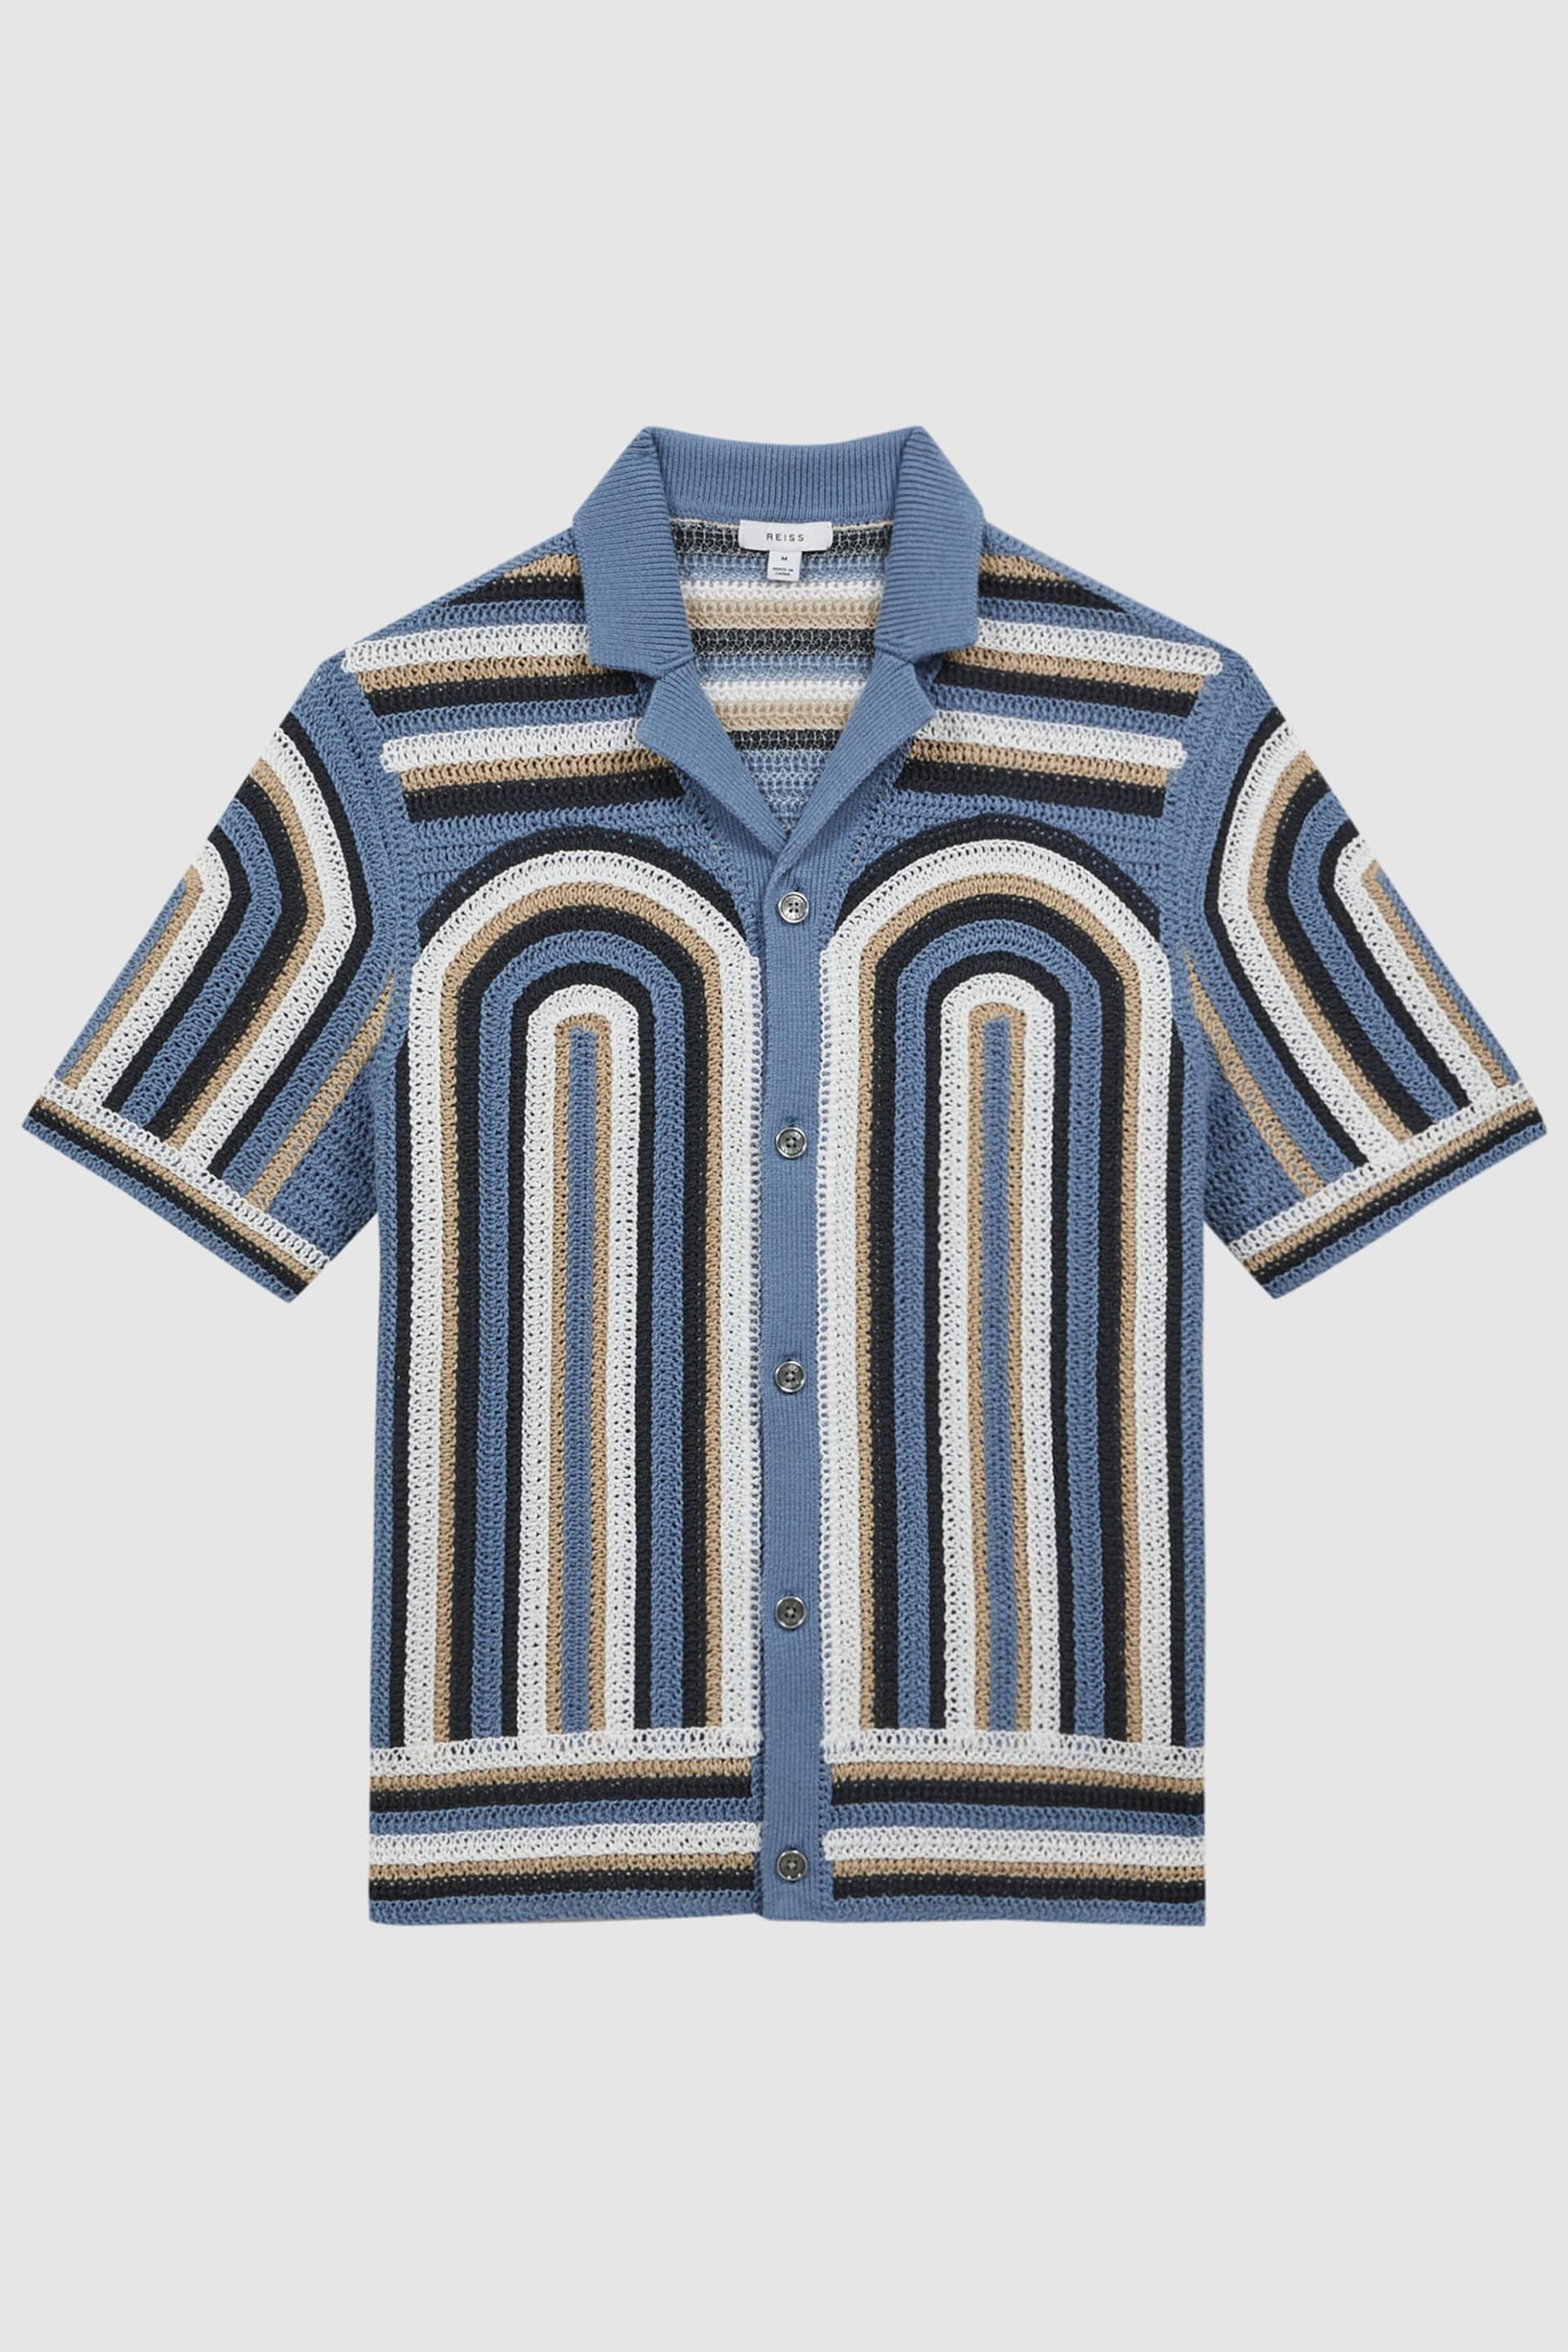 Reiss Blue Columbia Crochet Cuban Collar Shirt - Image 2 of 4